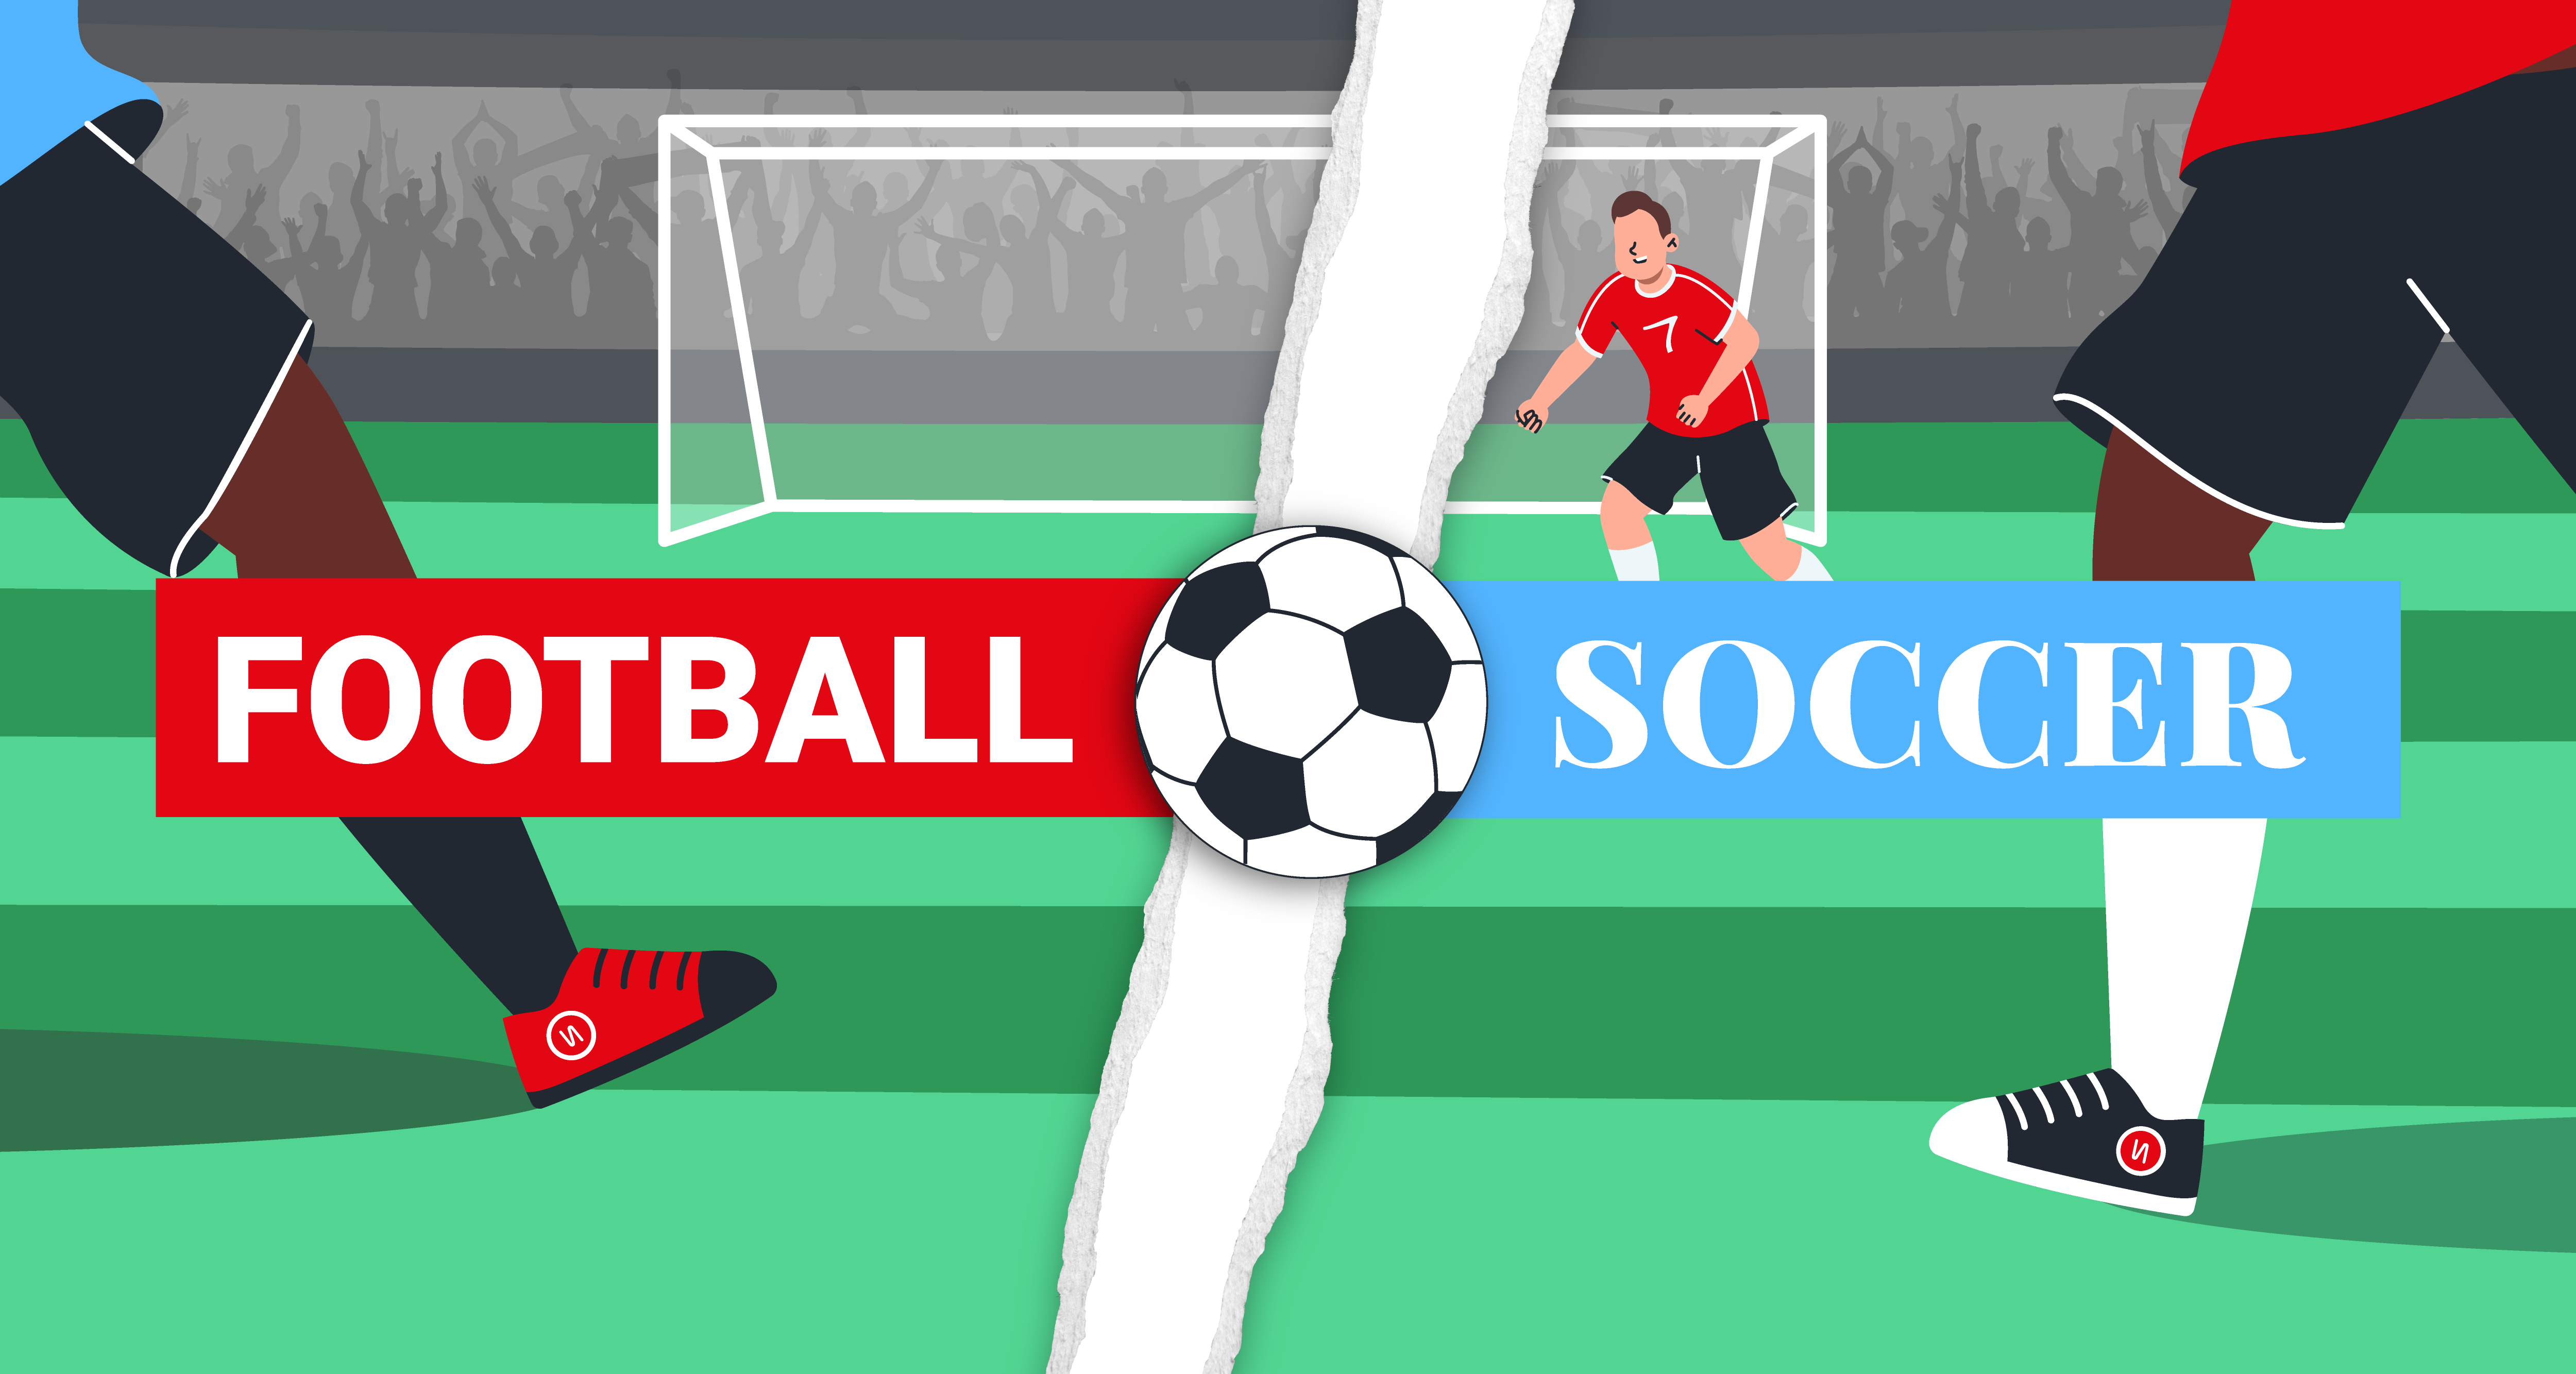 Illustration opposant d'un côté le mot Football et Soccer à droite.